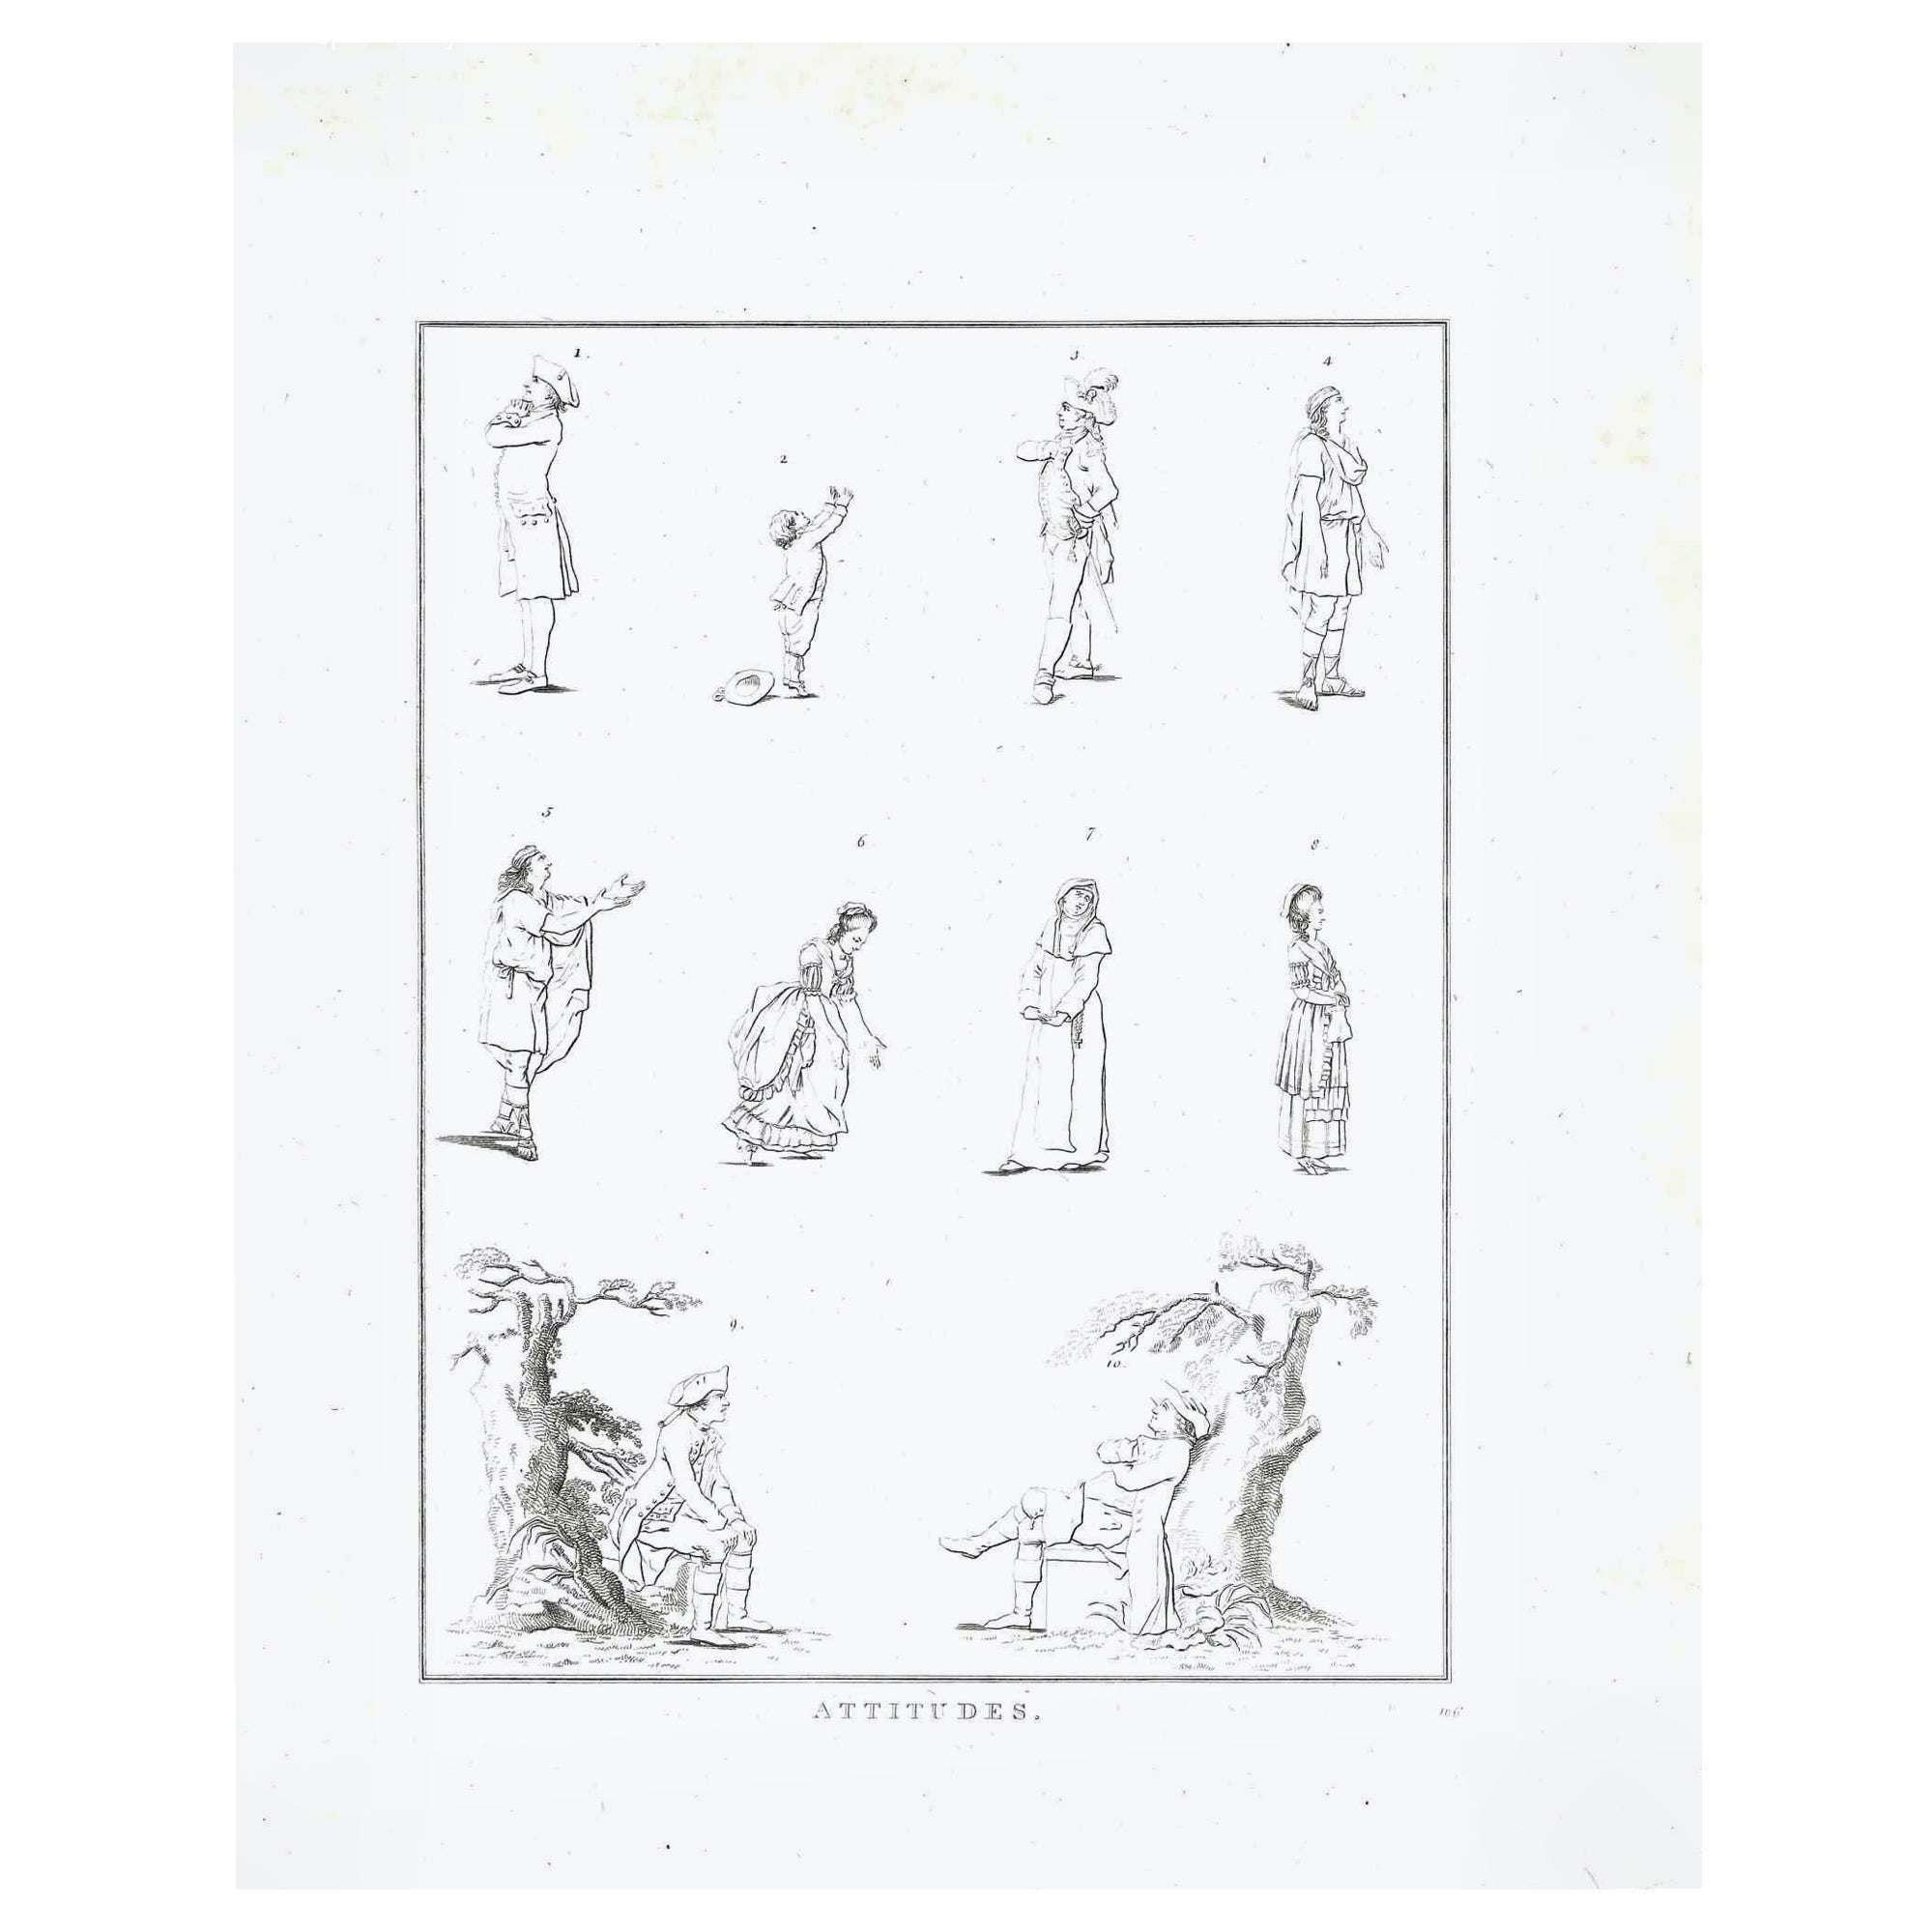 Figures - La physionomie est une gravure originale réalisée par Thomas Holloway pour les "Essais sur la physionomie, destinés à promouvoir la connaissance et l'amour de l'humanité" de Johann Caspar Lavater, Londres, Bensley, 1810. 

Bonnes